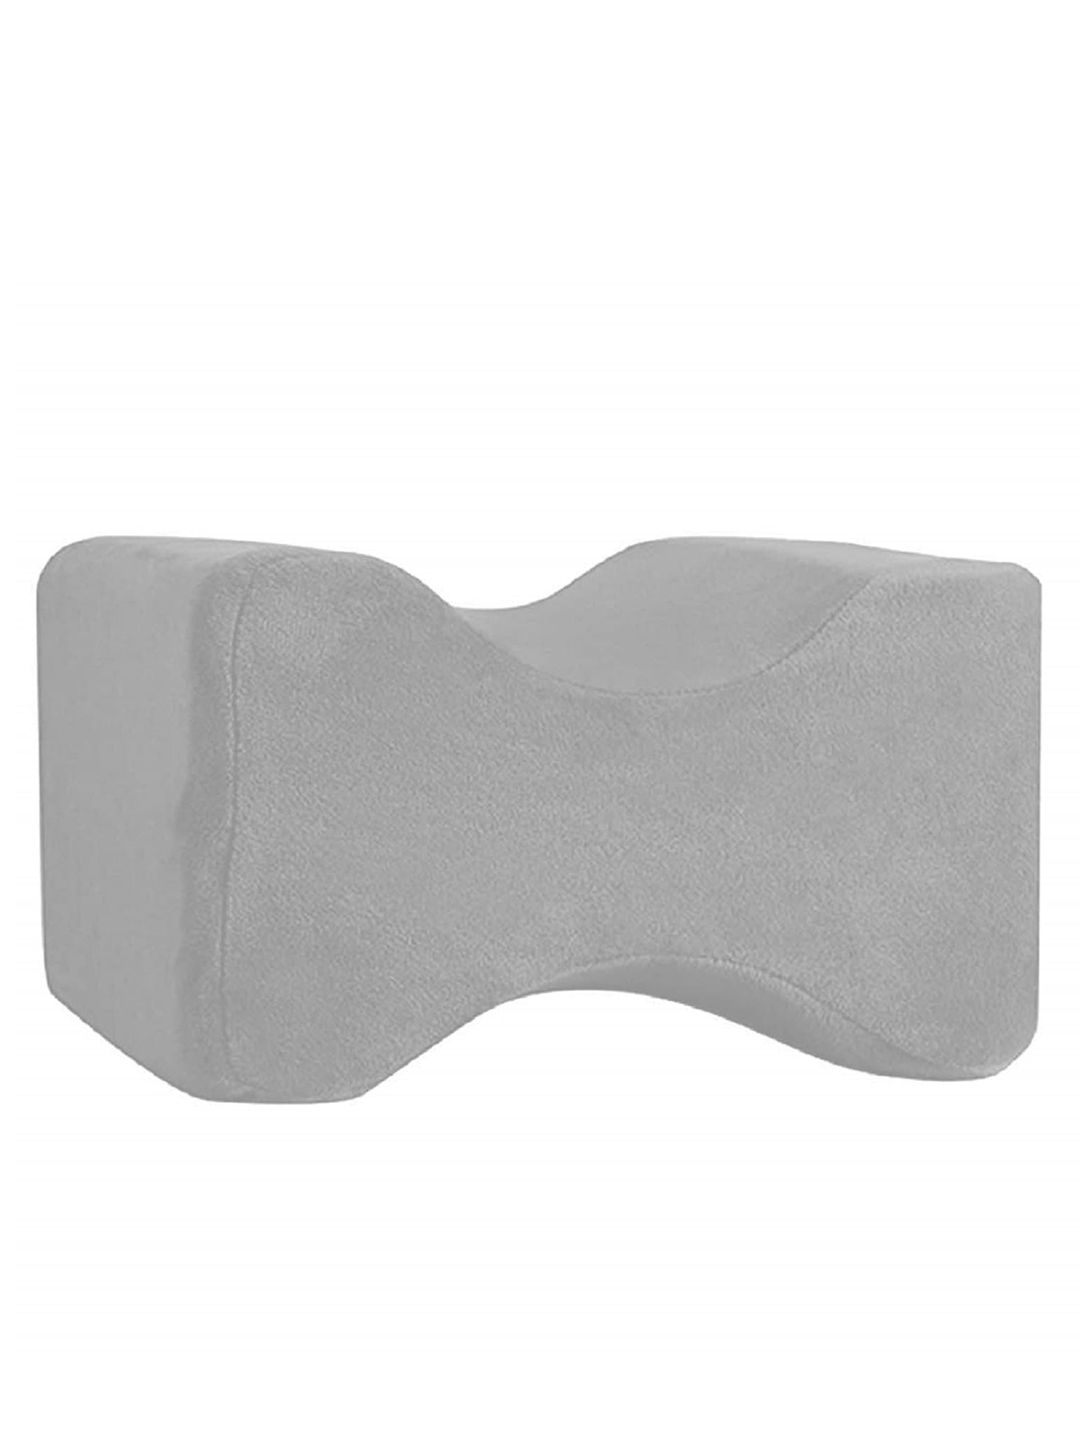 Pum Pum Grey Solid Leg Rest Orthopedic Pillow Price in India